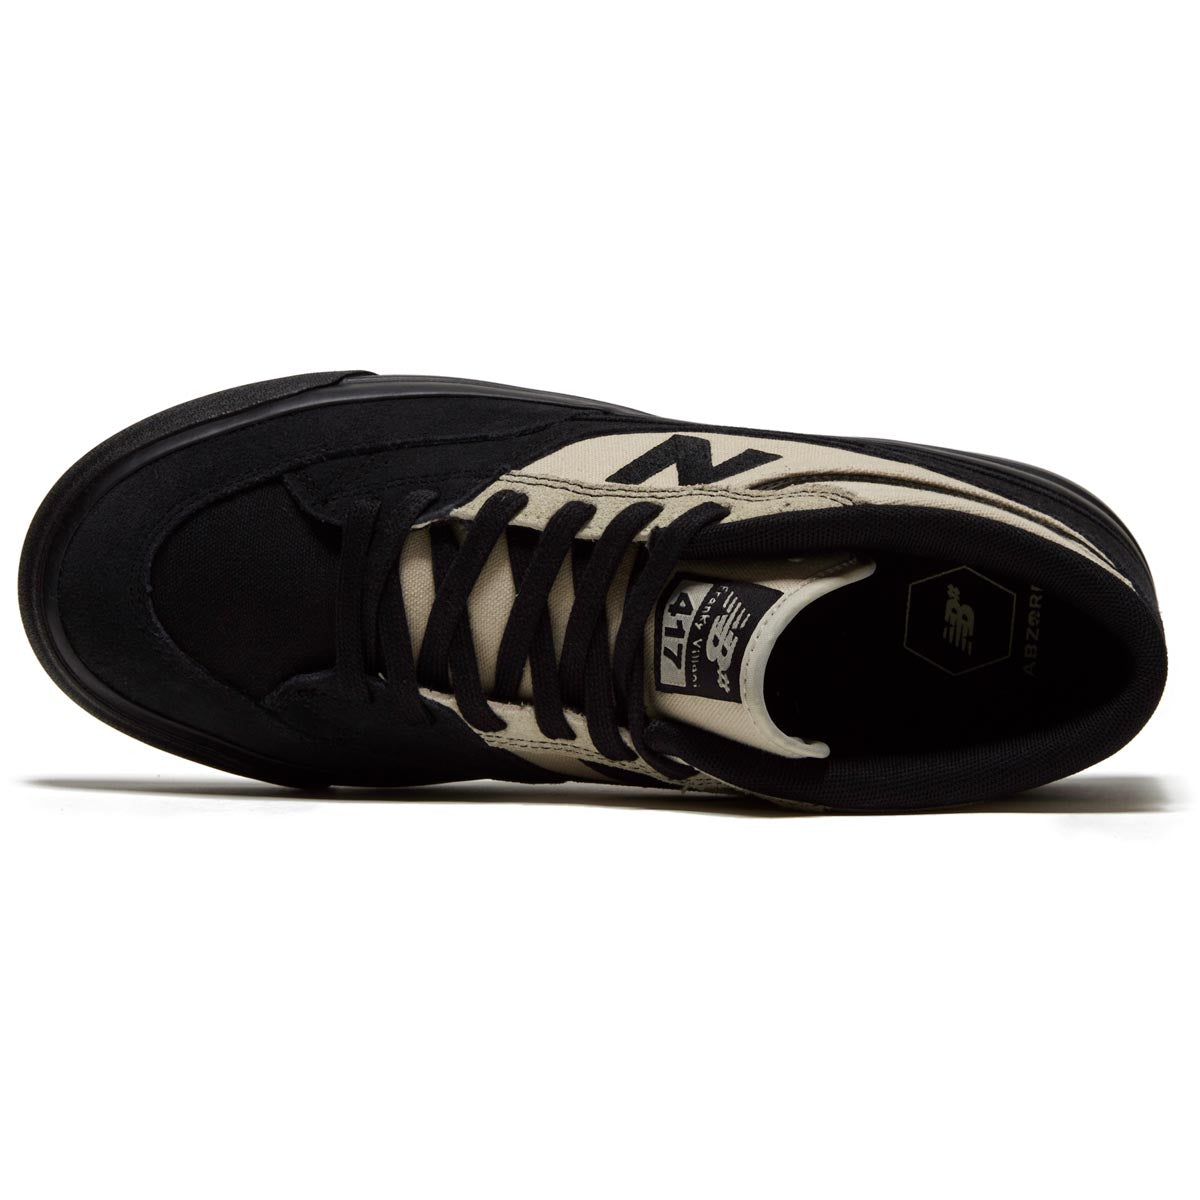 New Balance 417 Villani Shoes - Black/Tan image 3